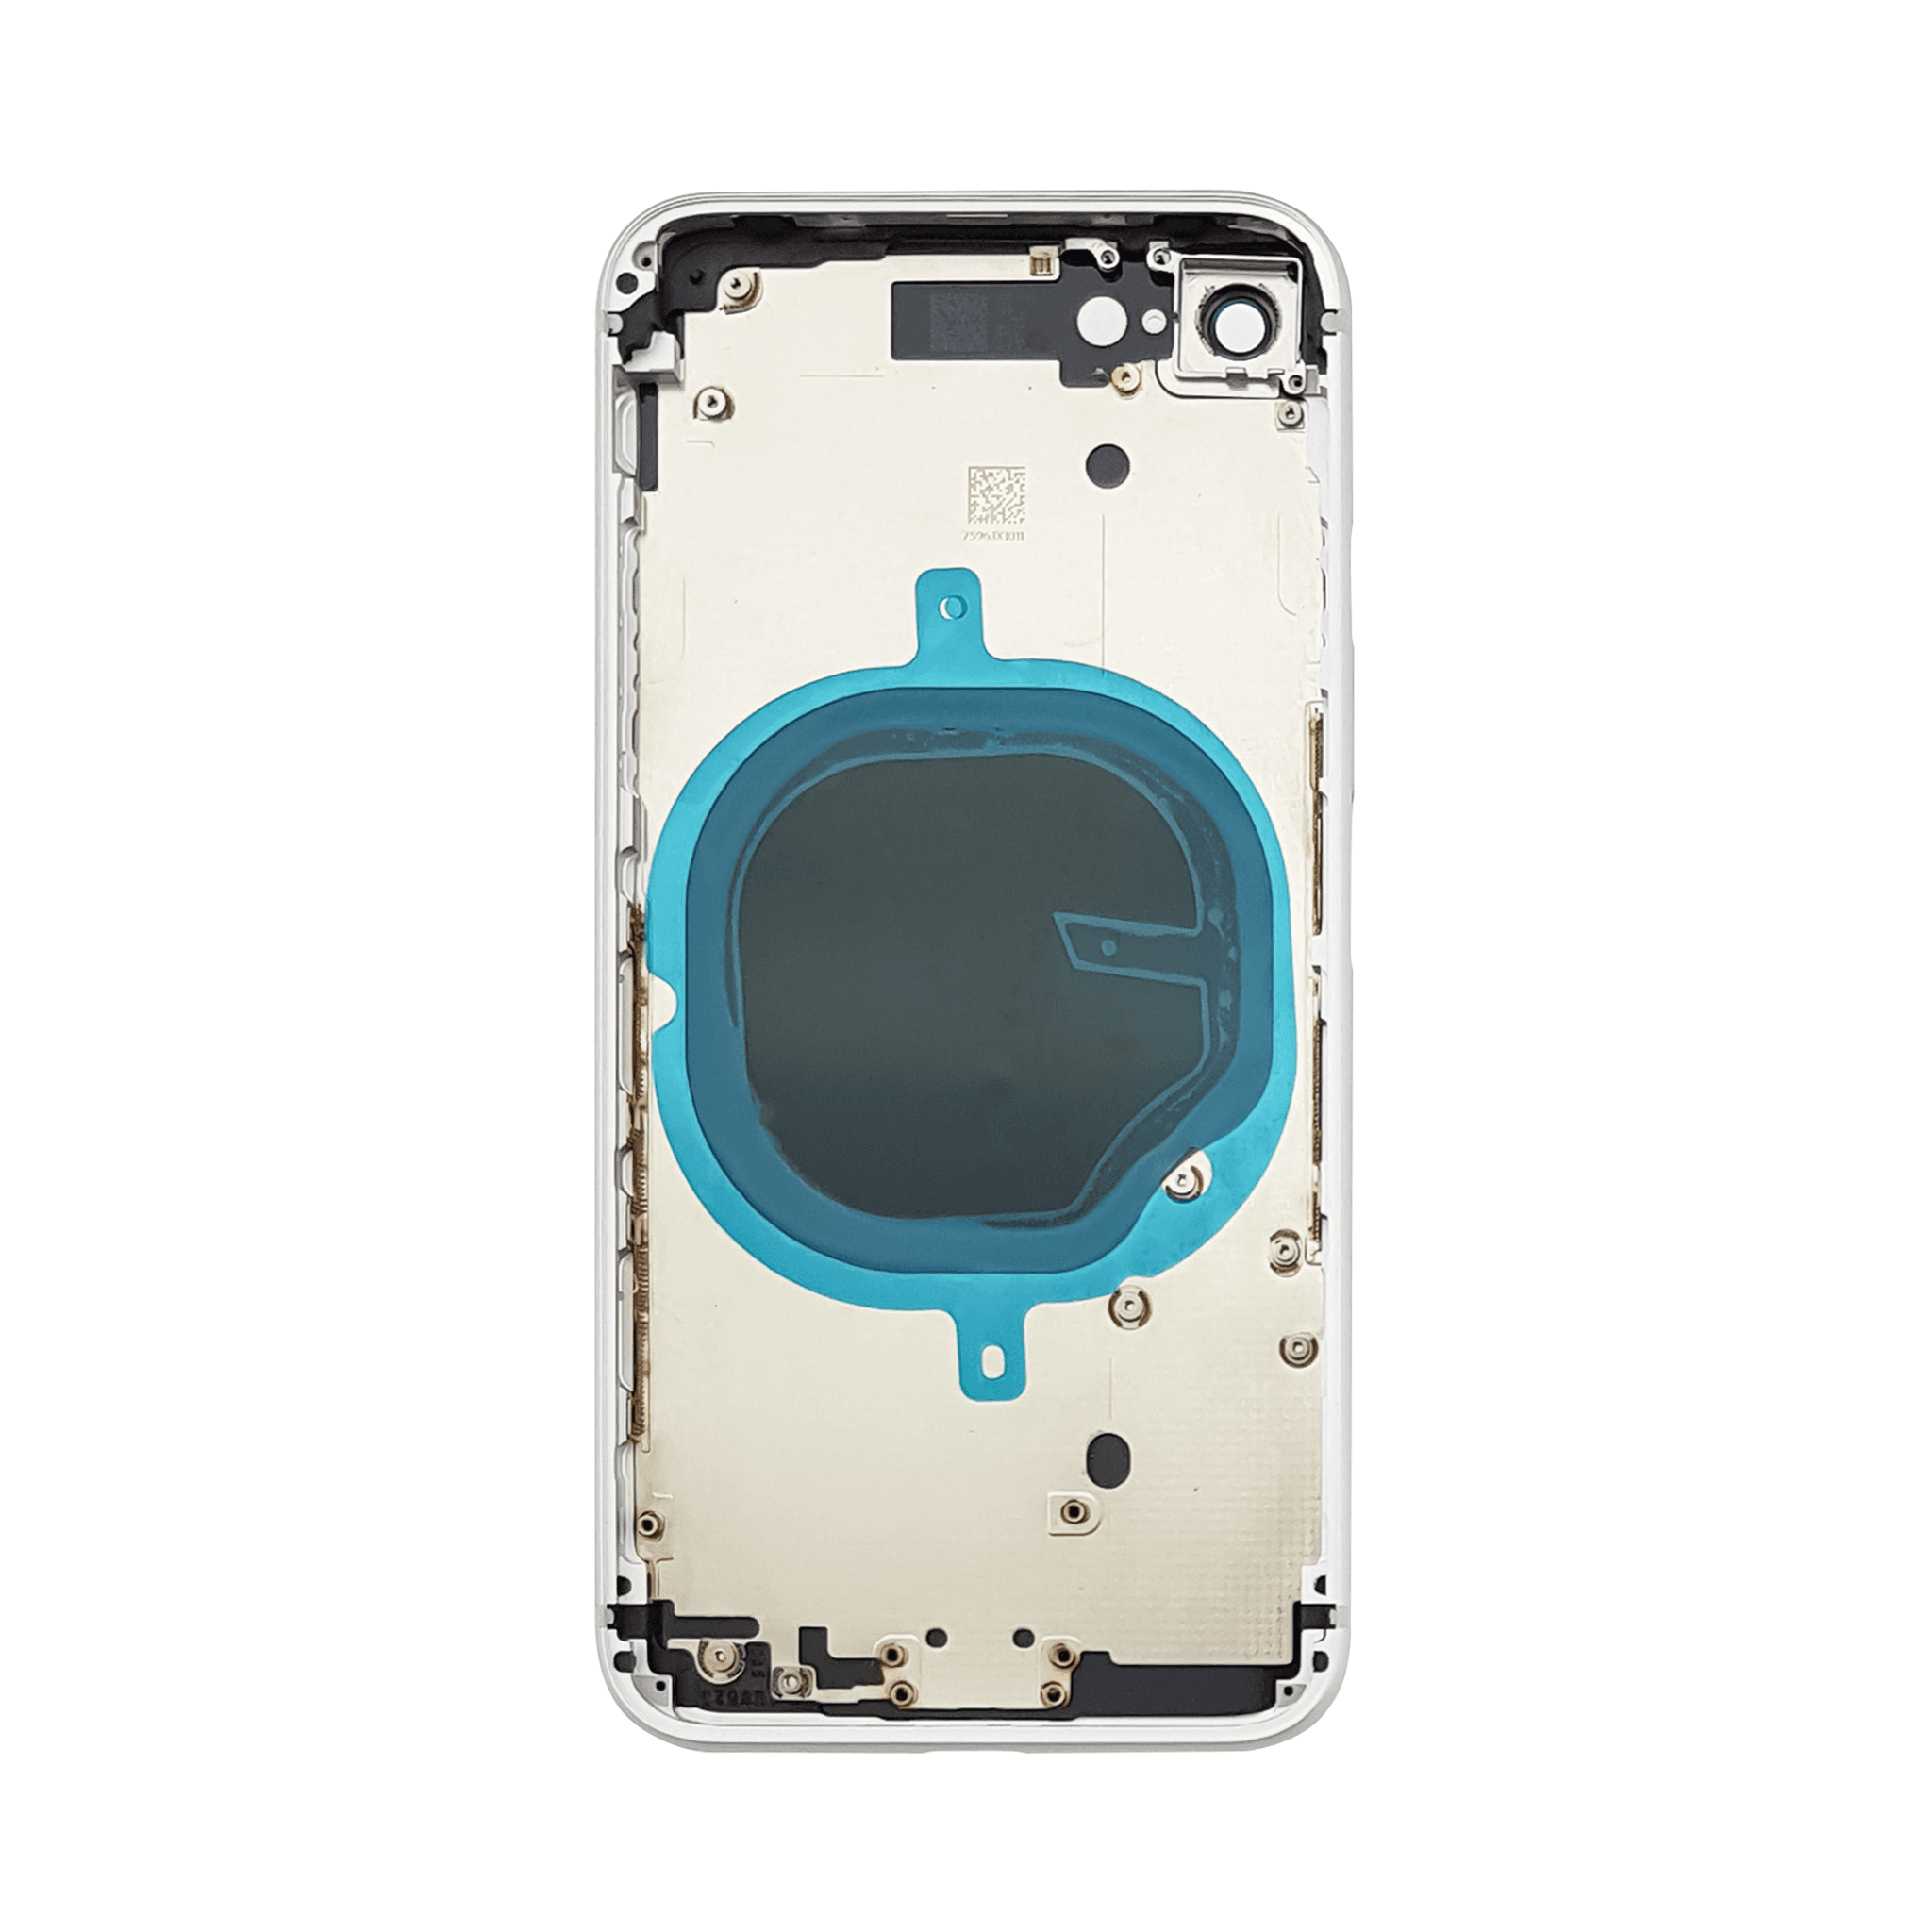 Korpus + kryt baterei iPhone 8 bílý